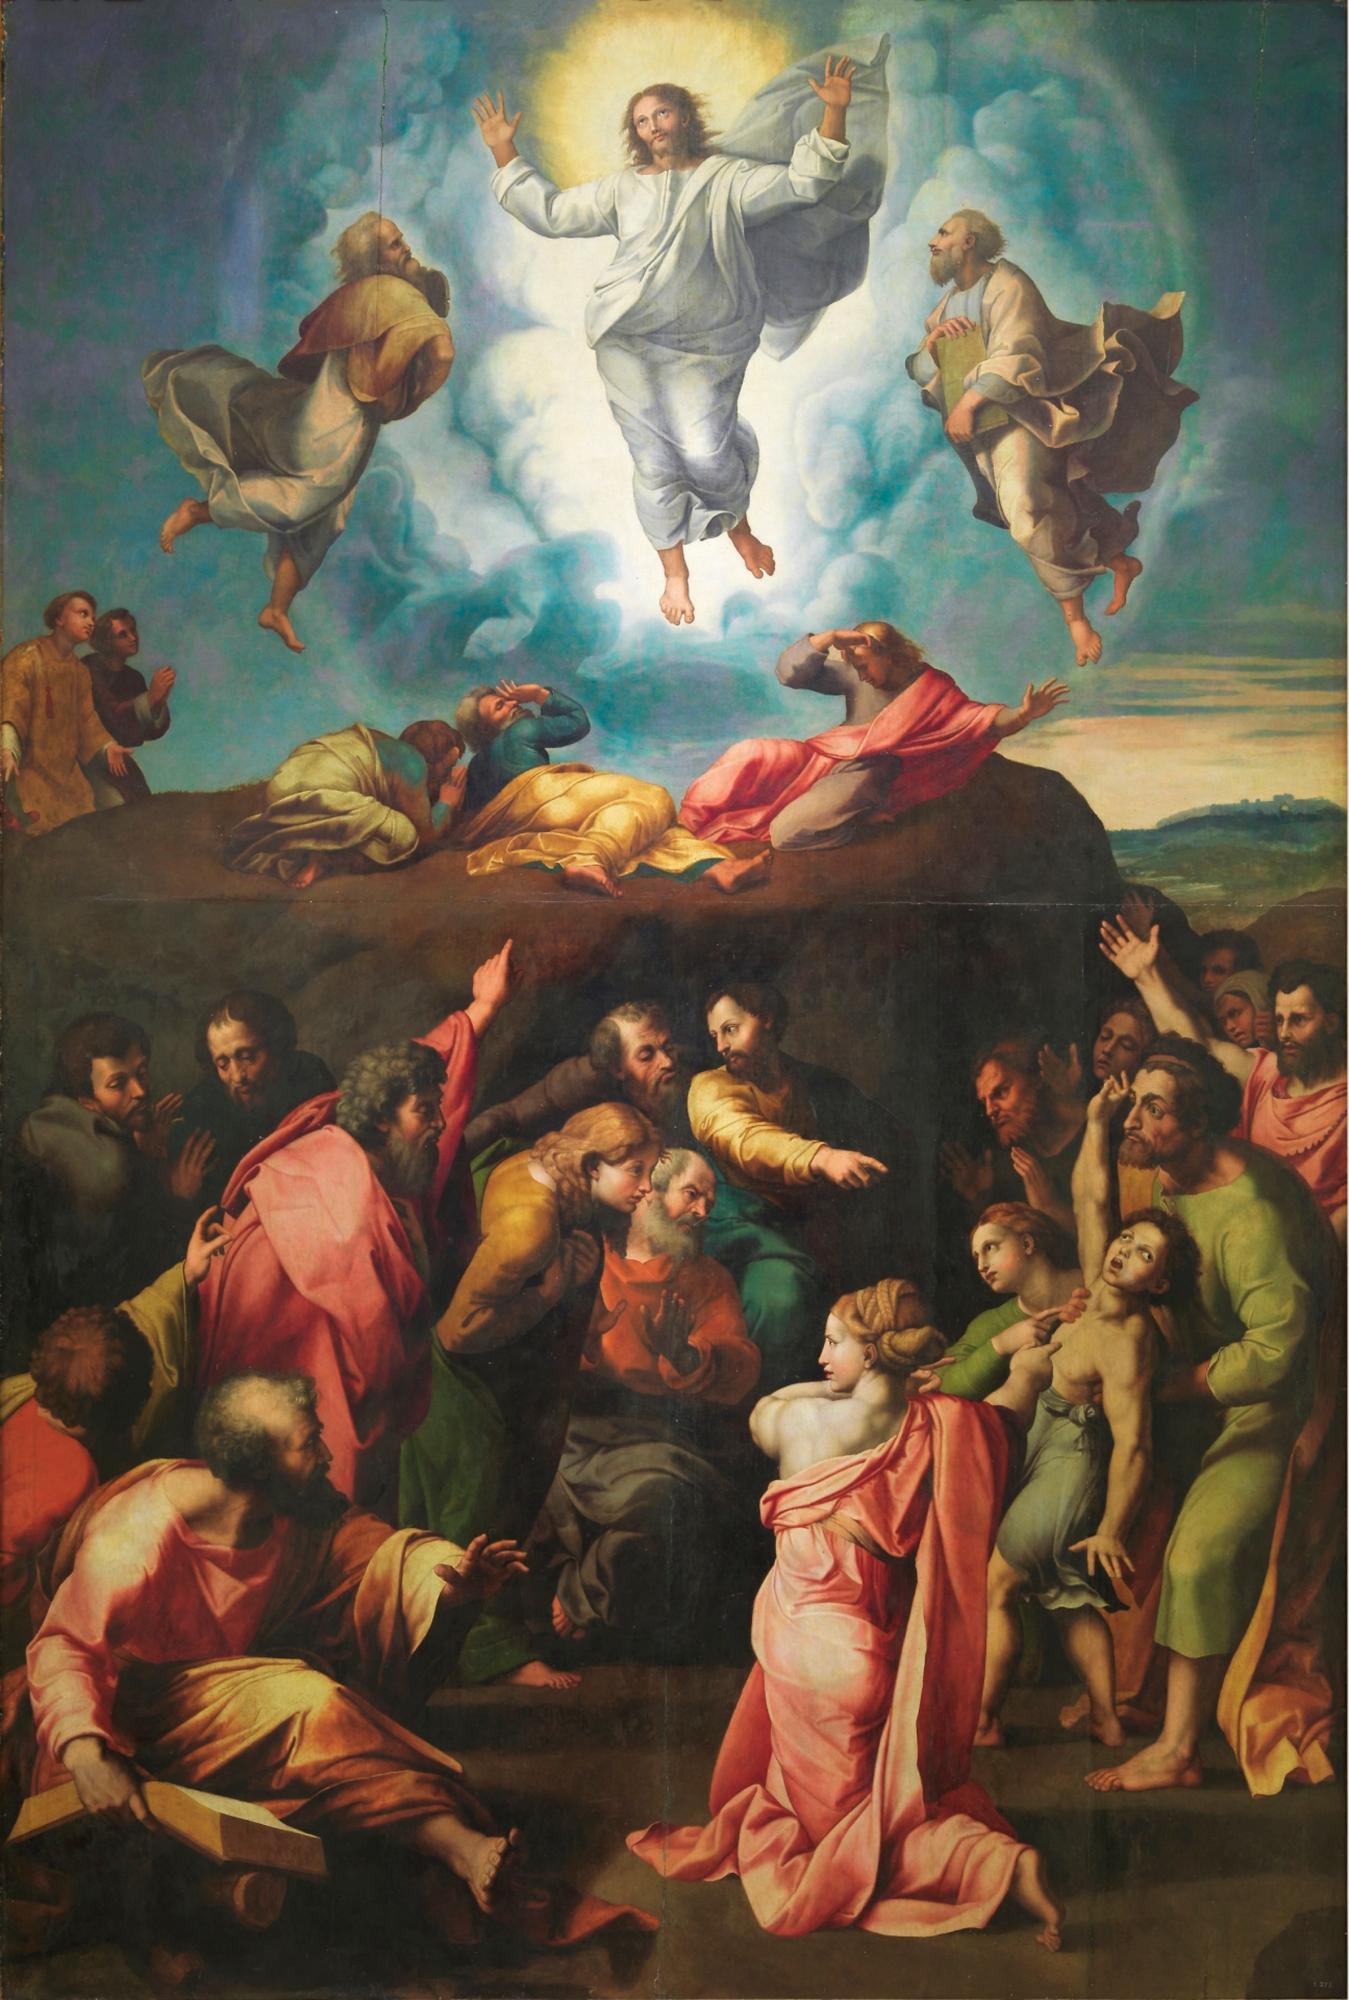 Imagen de la obra copia de Rafael “La Resurrección o Transfiguración del Señor” de Giovanni Francesco Penni.